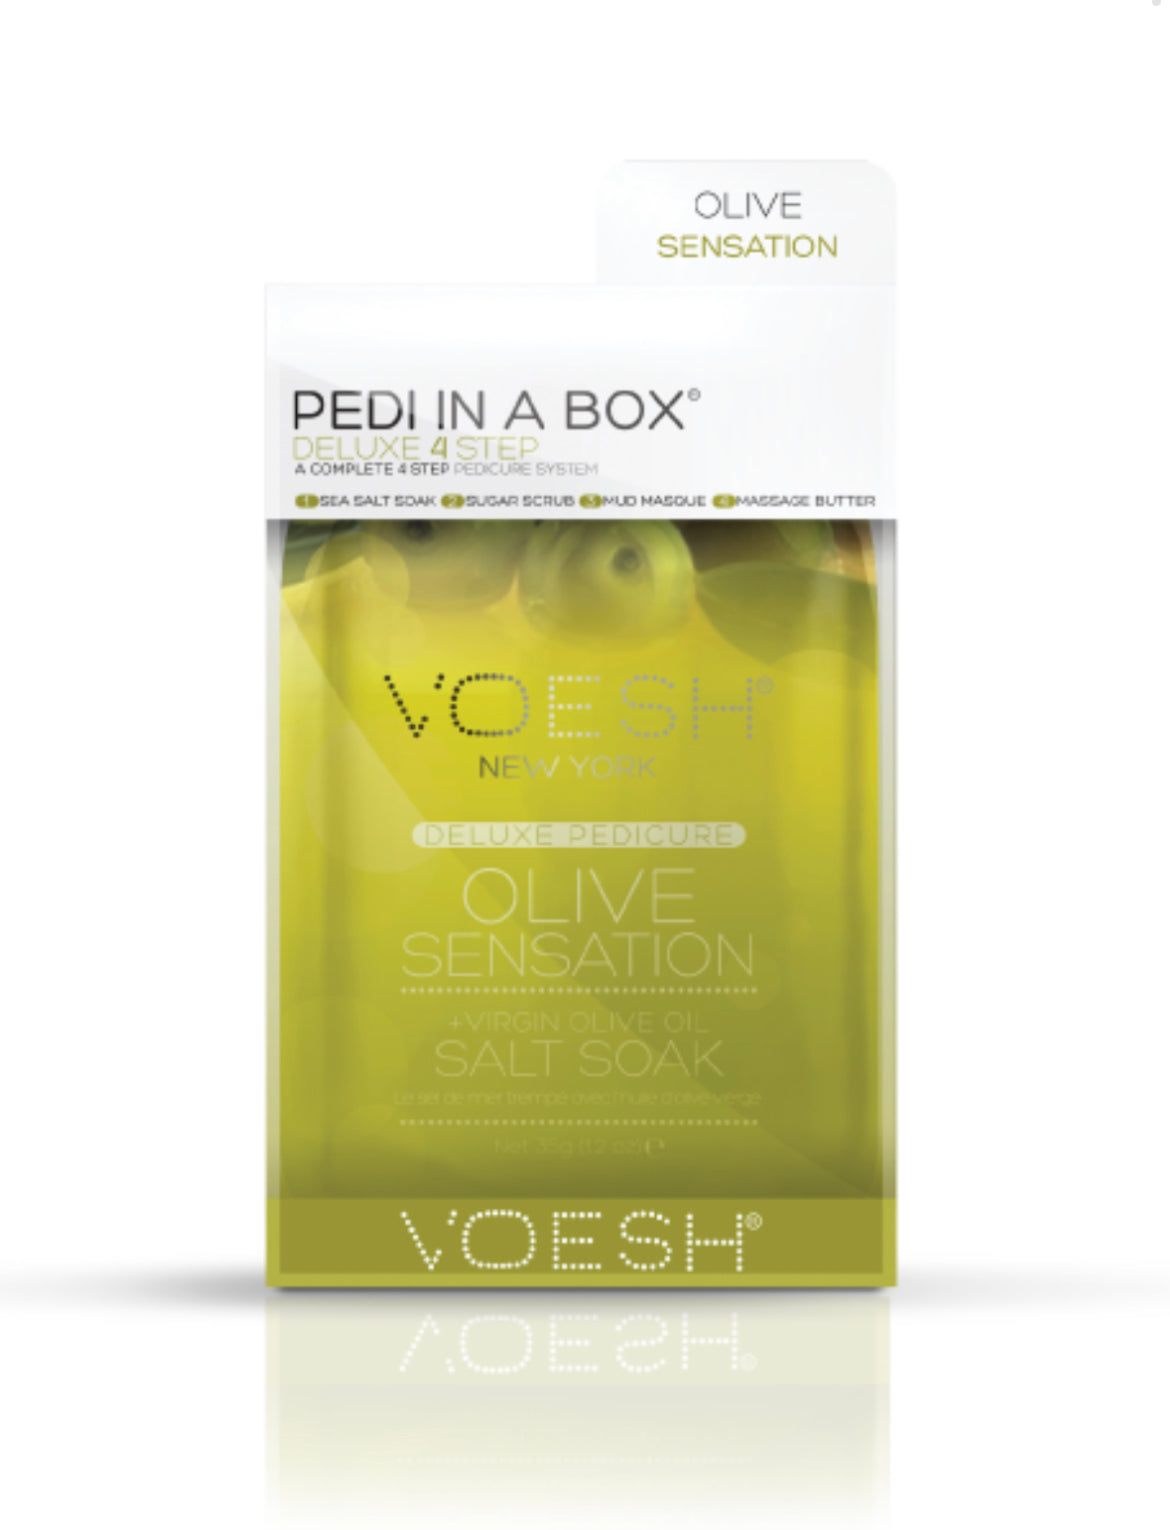 PEDI IN A BOX, – olive sensation